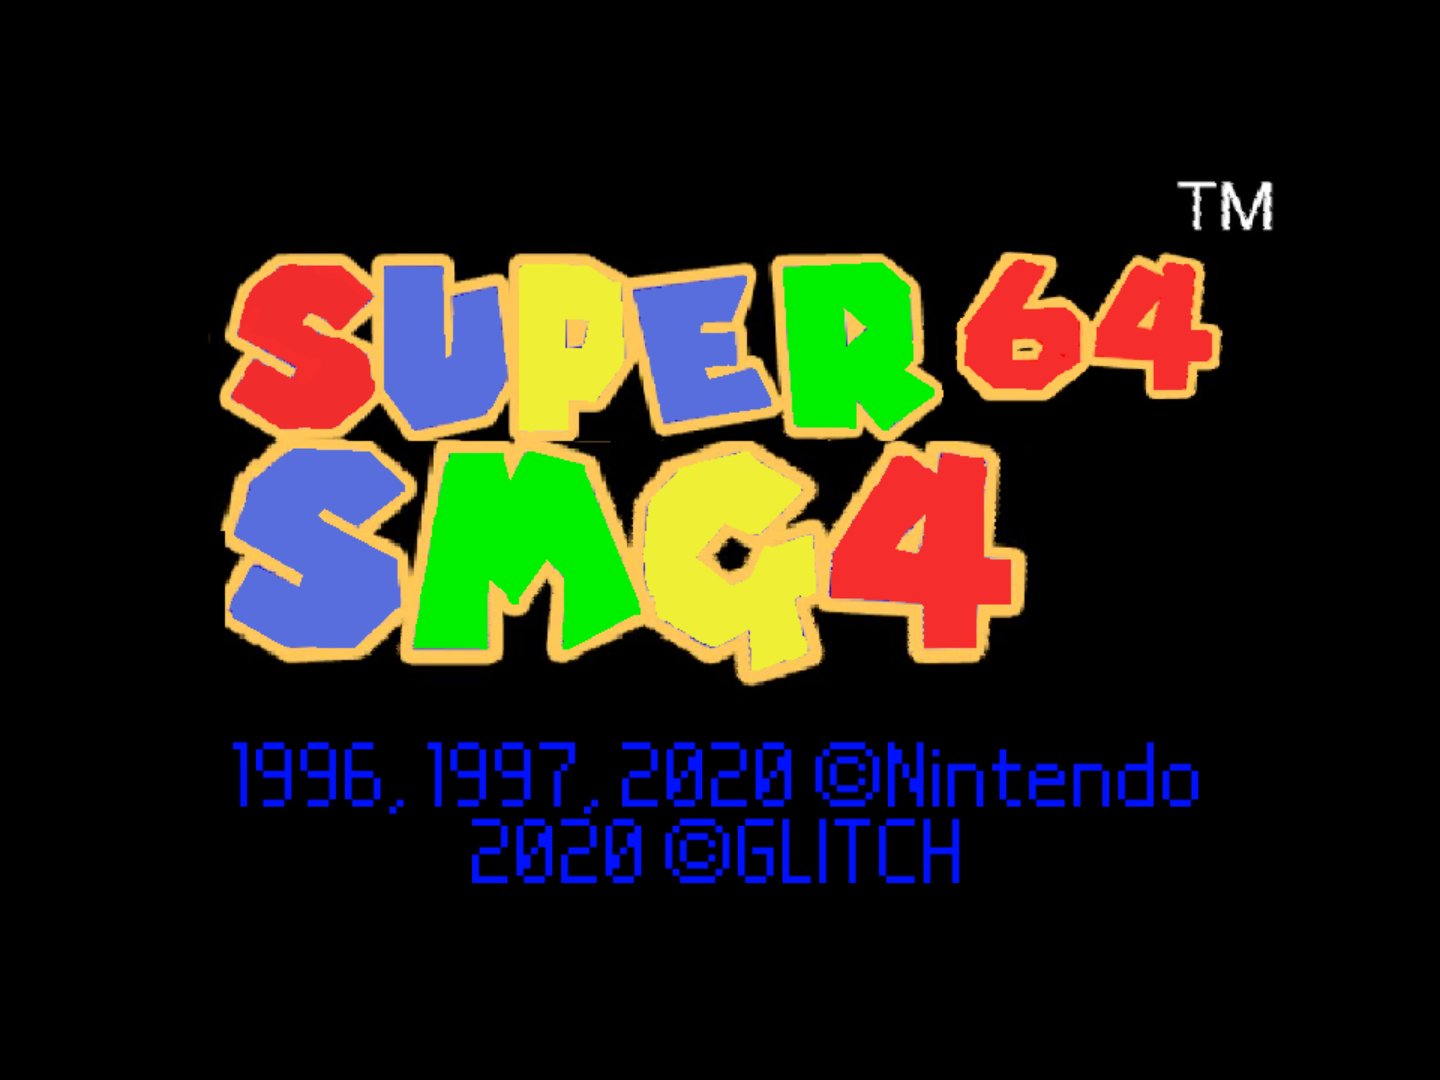 Nintendo 64 (N64) Emulators - Download N64 Emulator - Romspedia